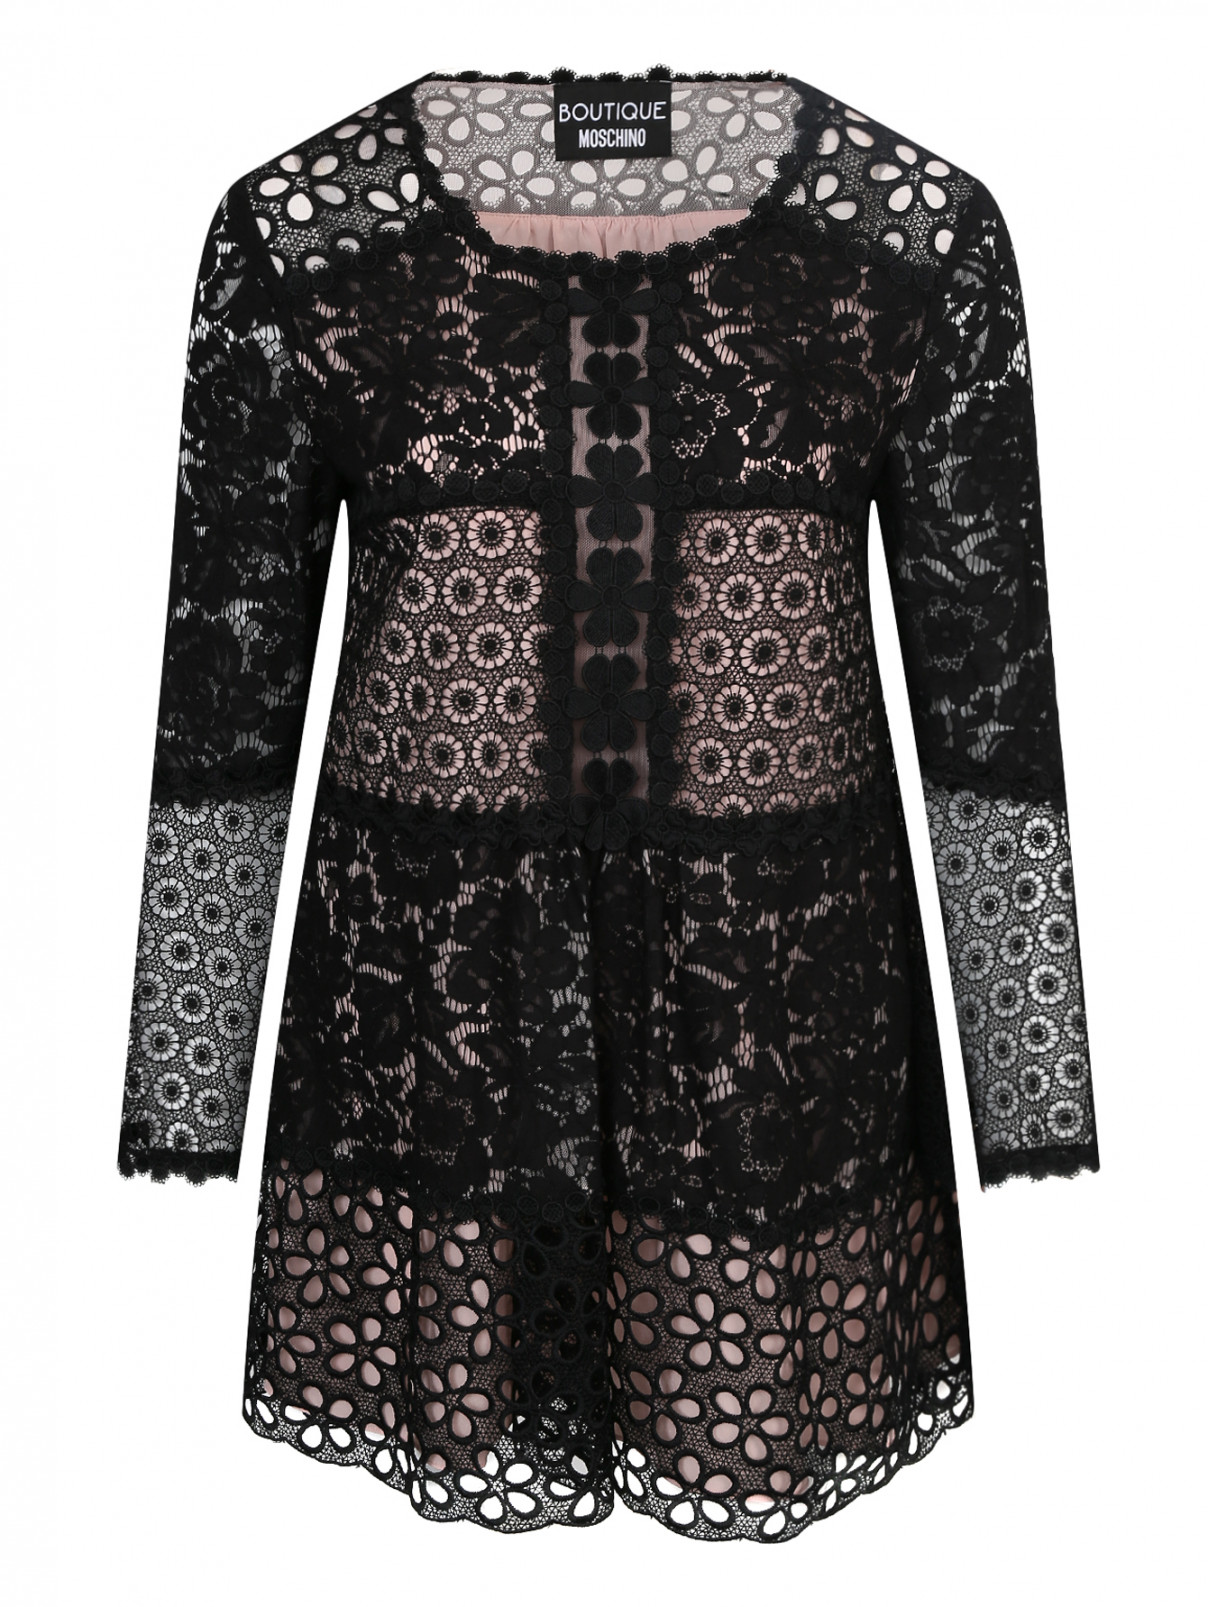 Платье с узором Moschino Boutique  –  Общий вид  – Цвет:  Черный